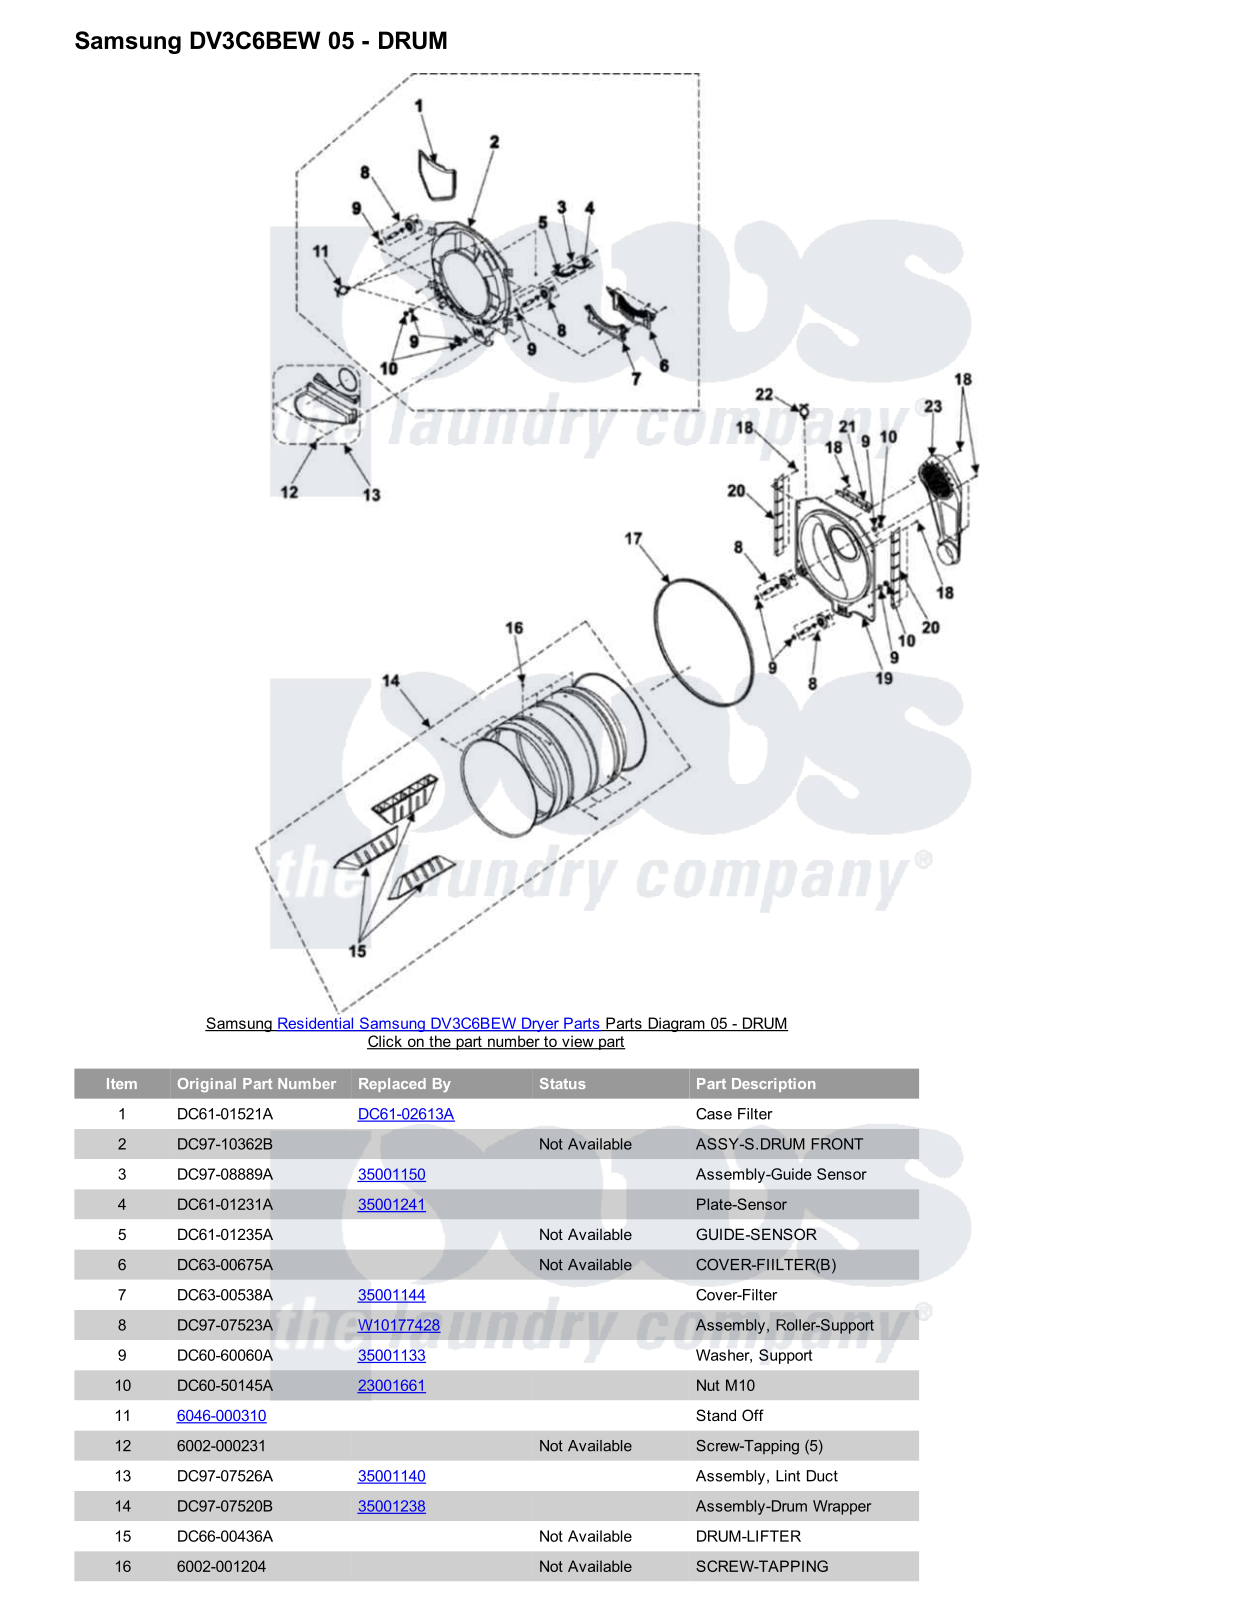 Samsung DV3C6BEW Parts Diagram